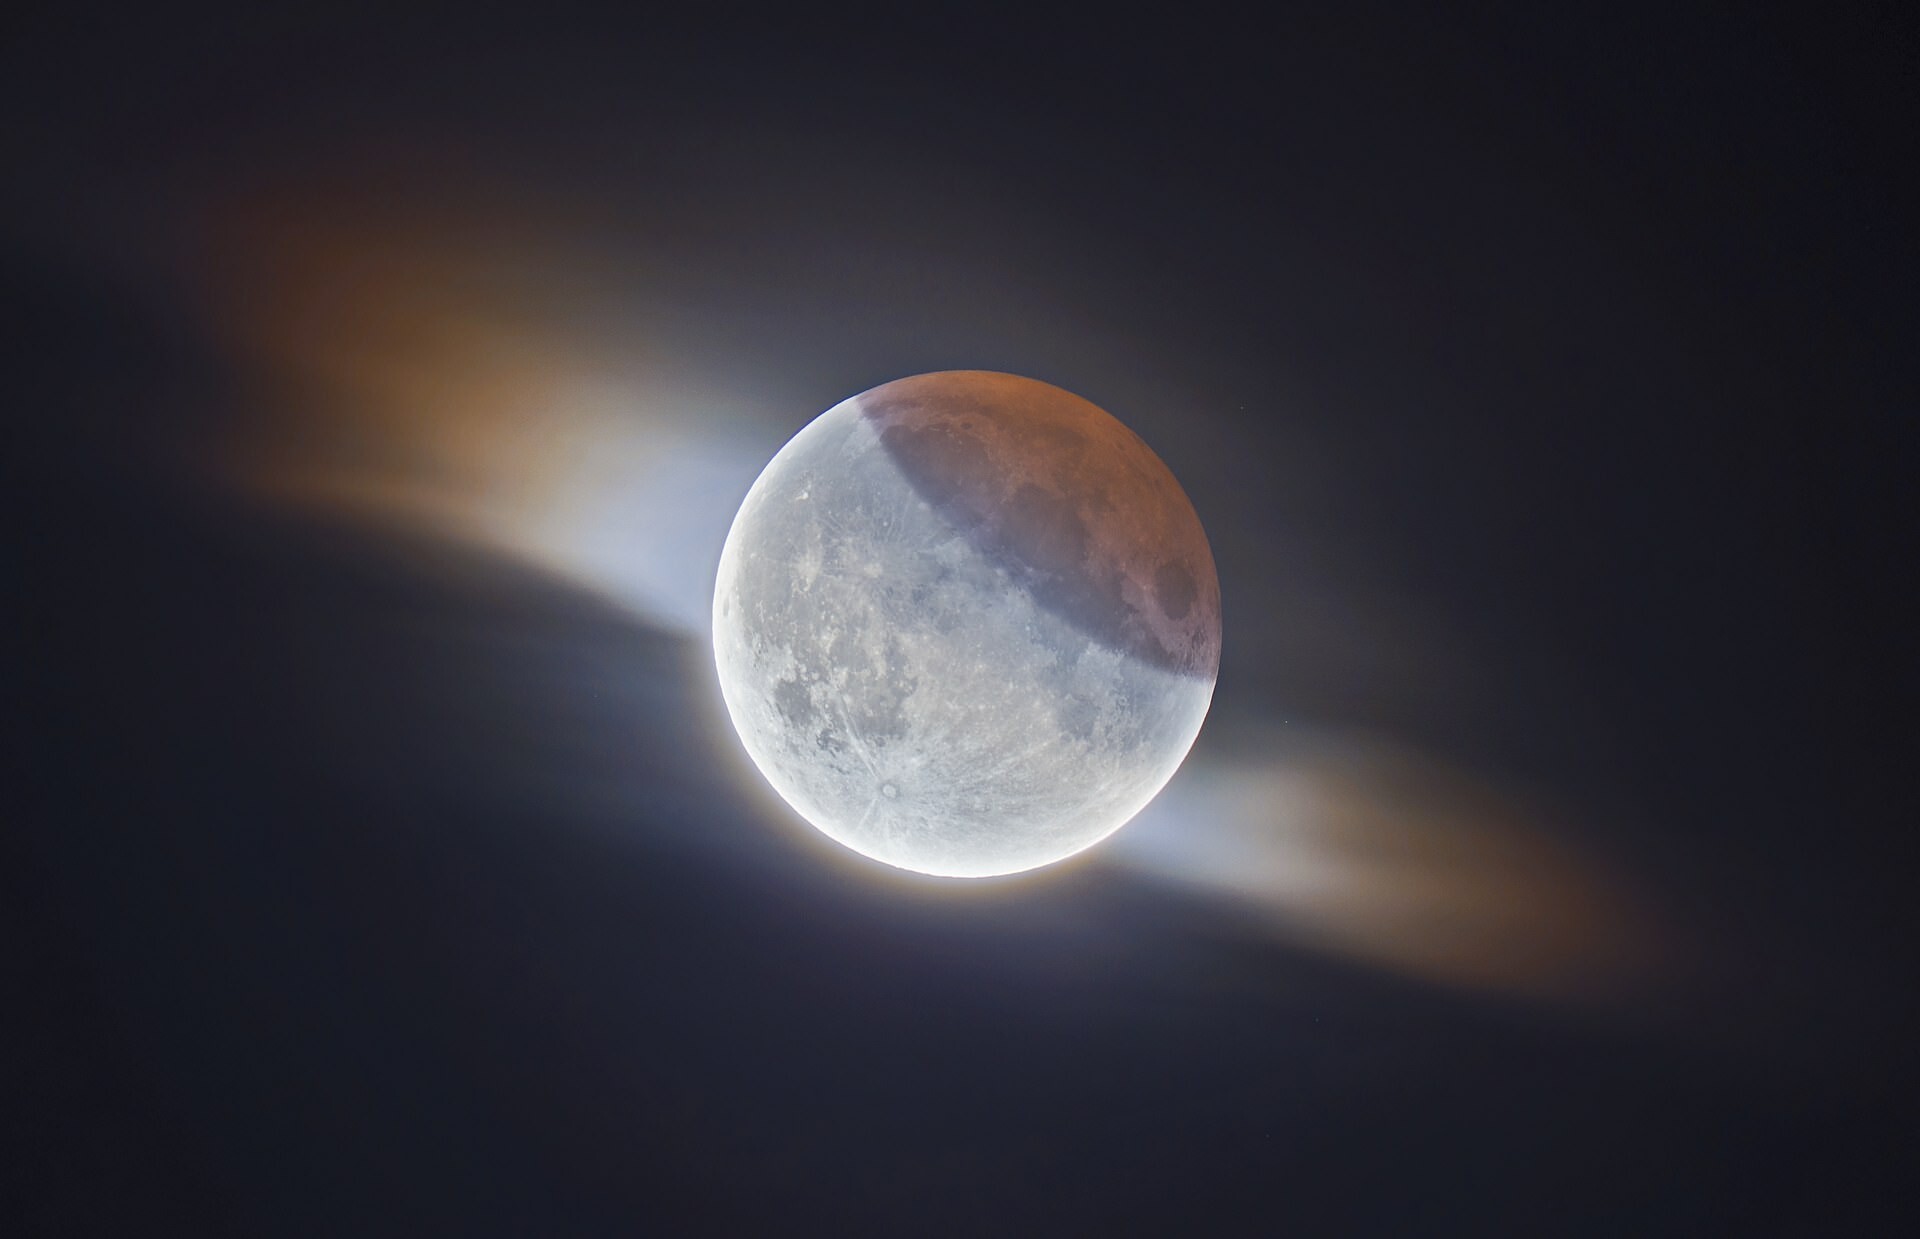 Частичное лунное затмение с облаками. Автор - Итан Робертс, Великобритания. Второе место в категории "Наша Луна"